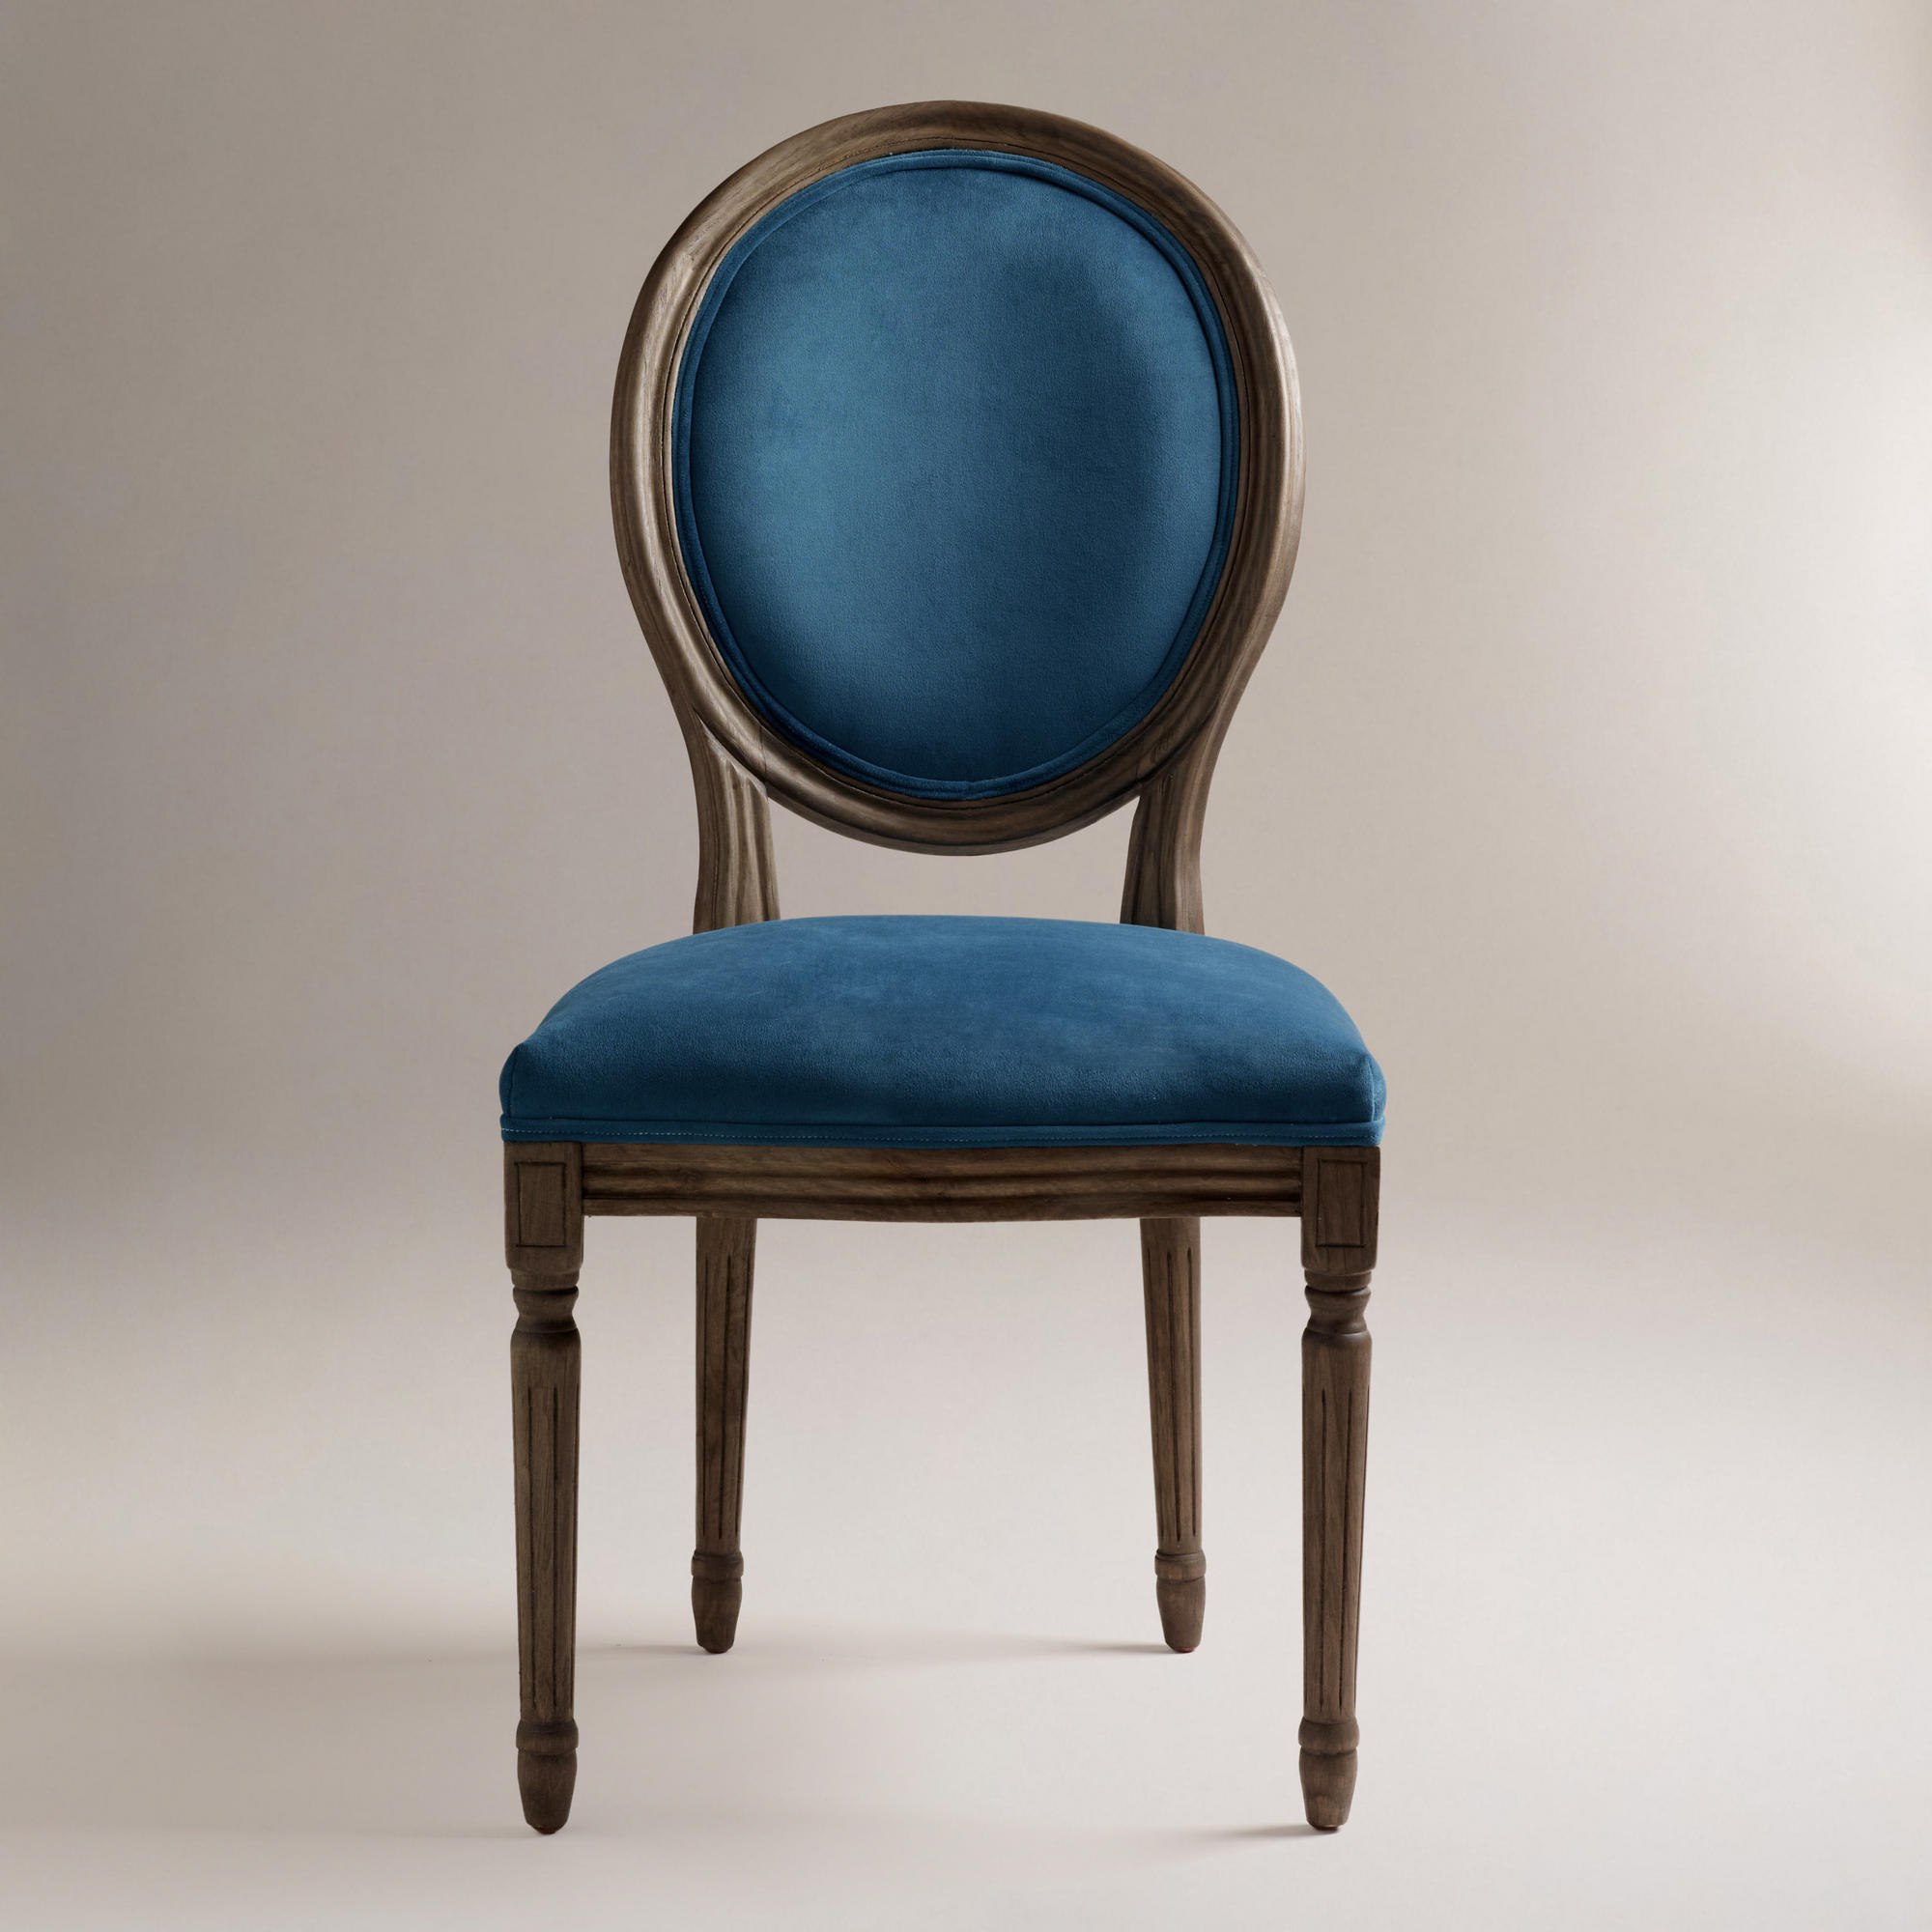  Interior Chair Design Wonderful Peacock Blue Chair